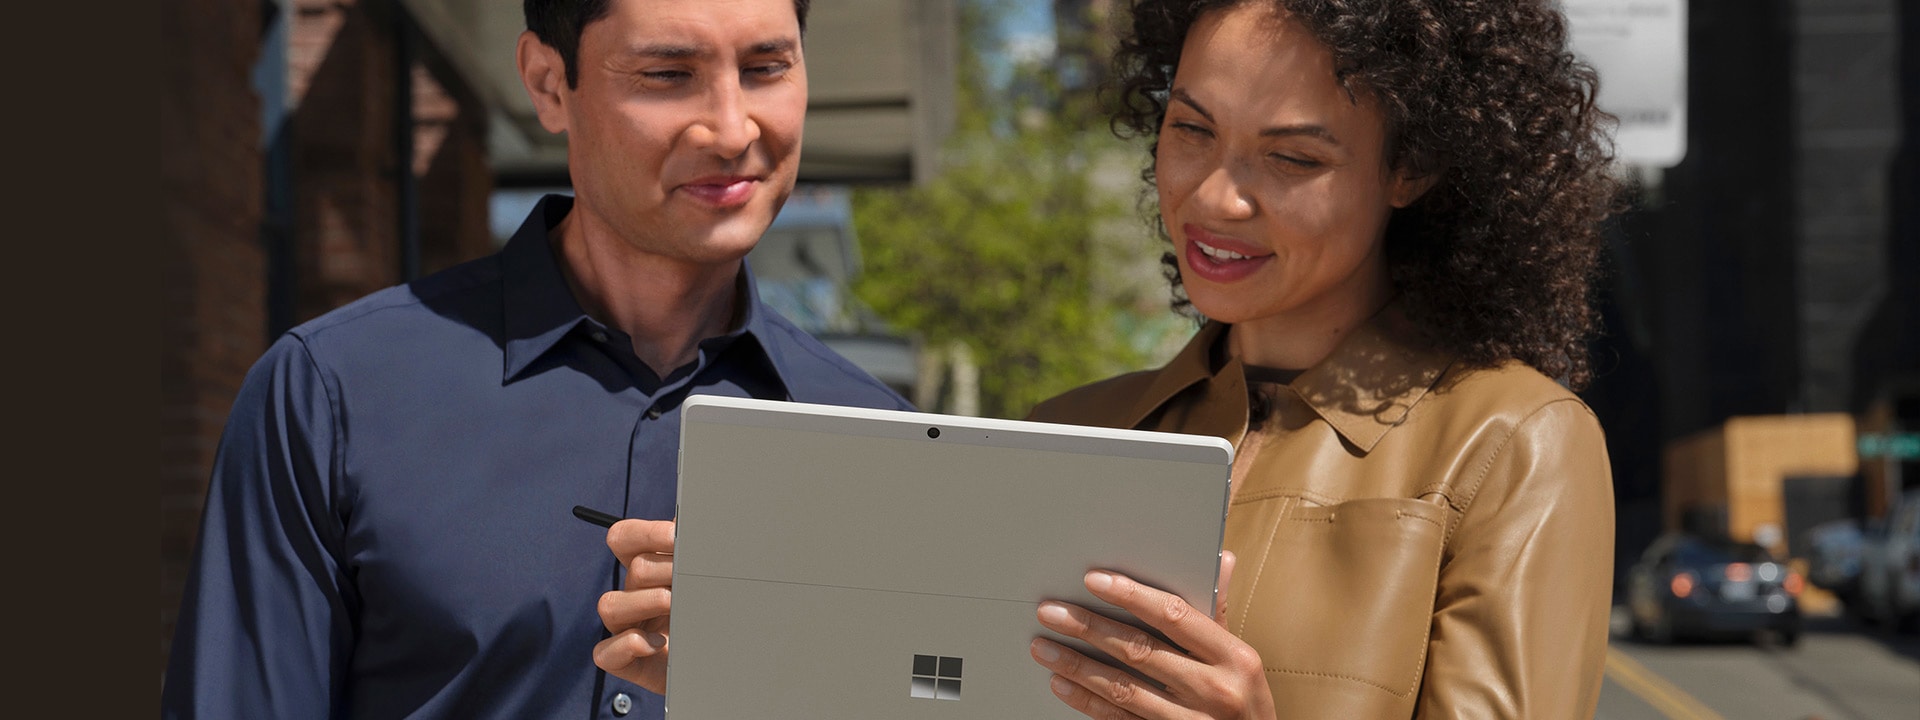 Deux personnes se tenant à l’extérieur sur un trottoir dans une ville métropolitaine voyant l’écran de sa Surface Pro X en mode tablette